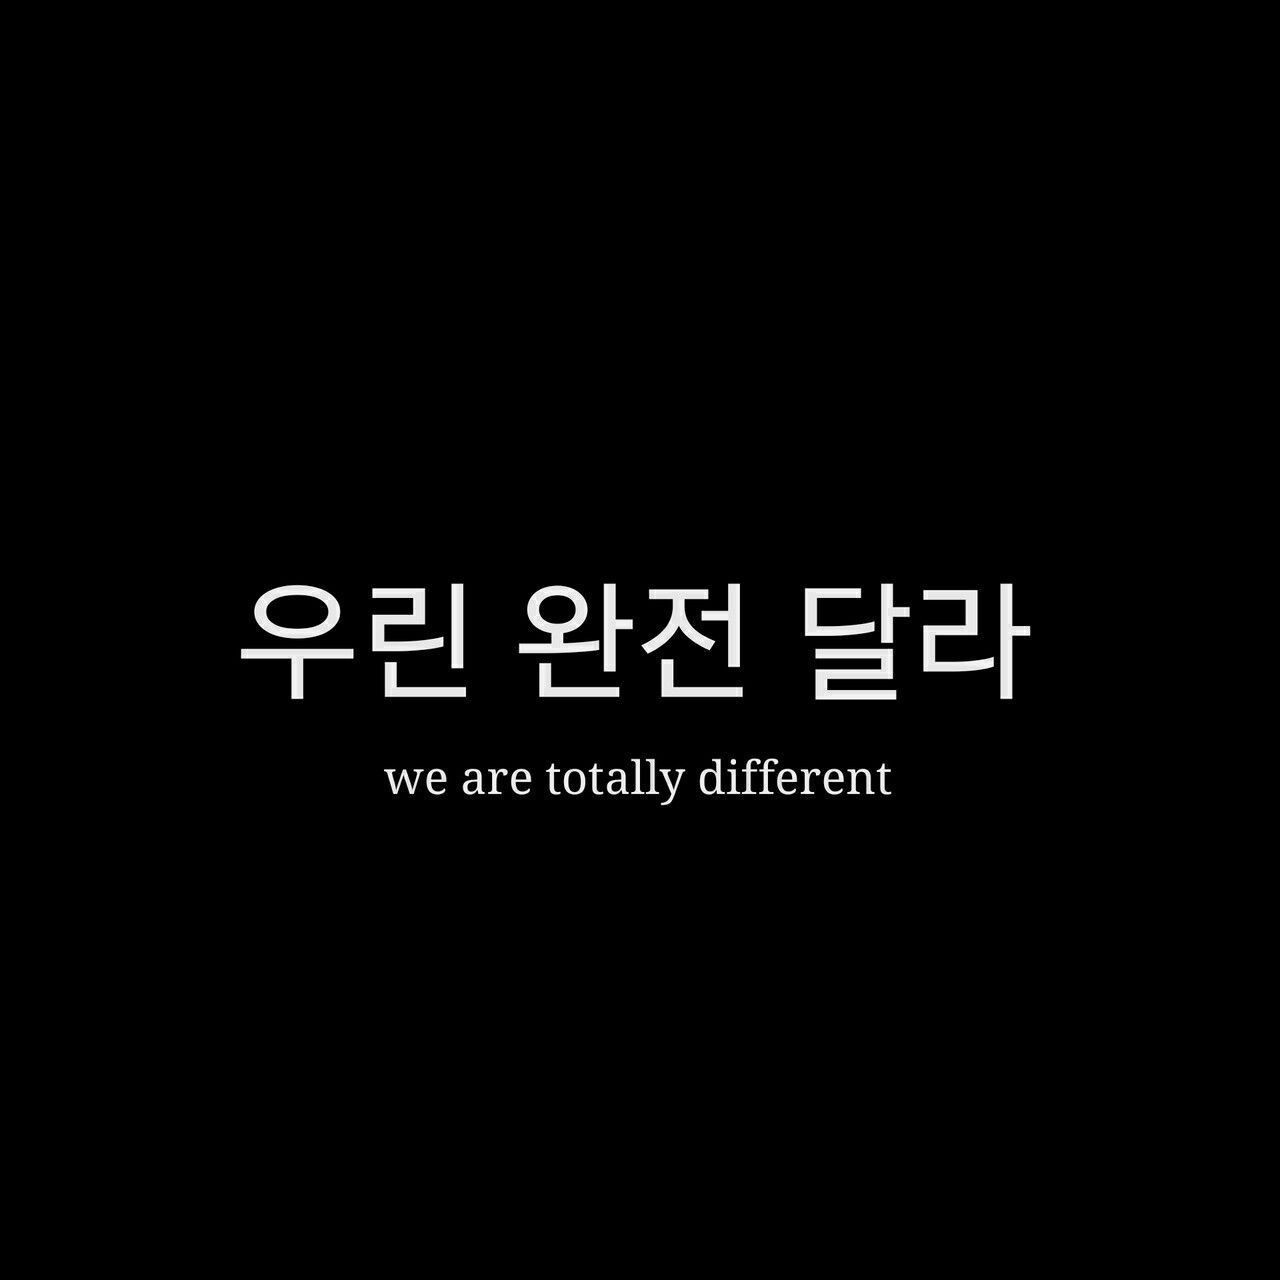 Somos totalmente diferente. Korean phrases, Korean quotes, Korean text